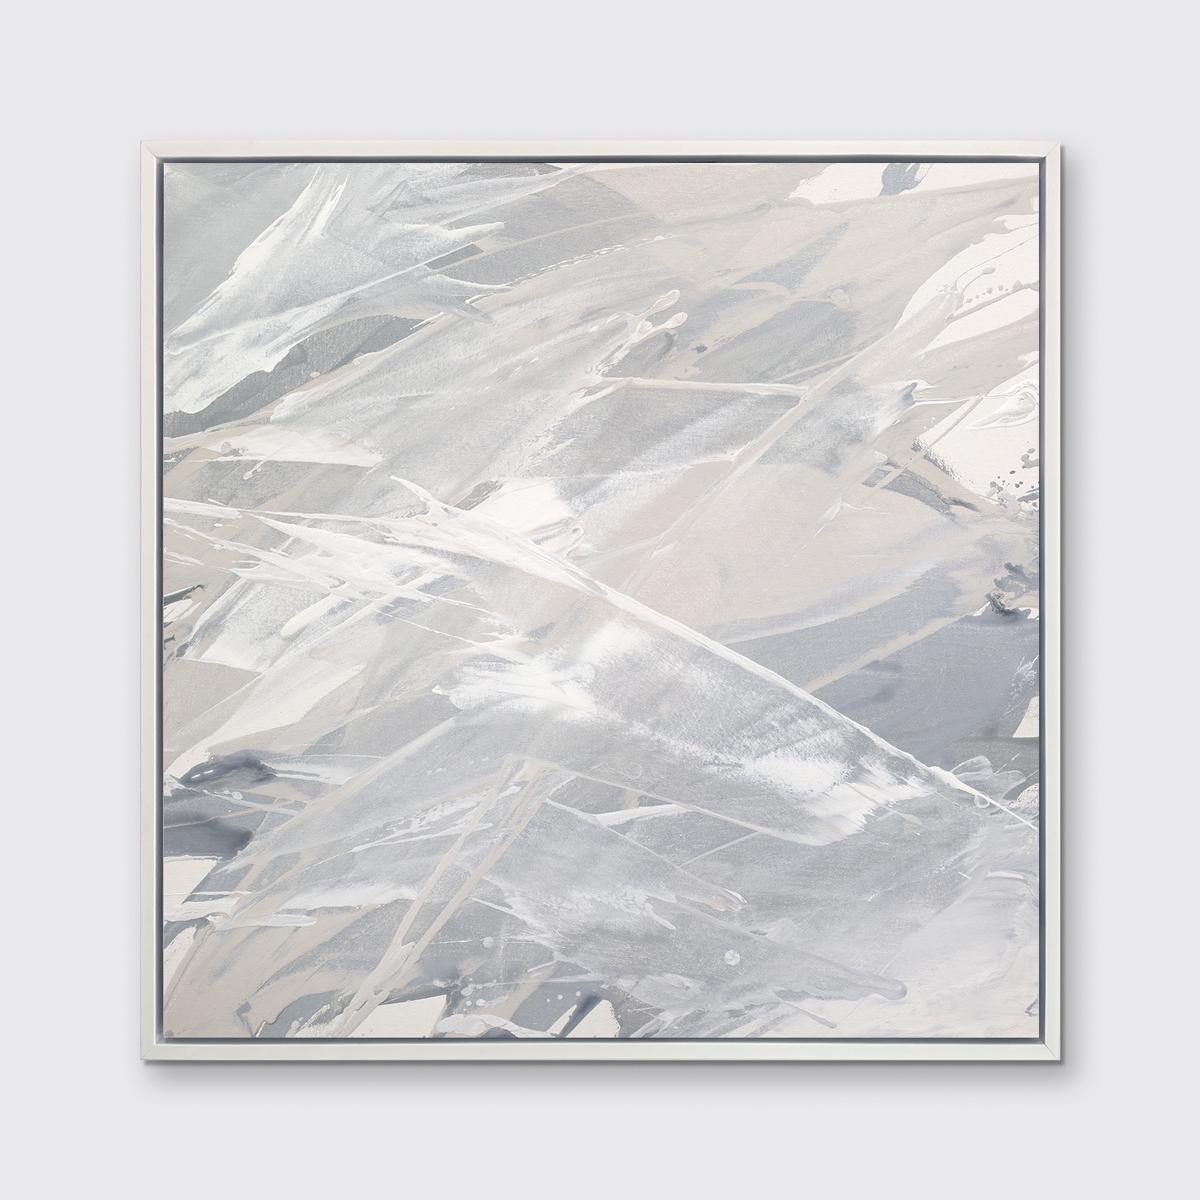 Dieser zeitgenössische Druck in limitierter Auflage von Teodora Guererra zeichnet sich durch eine warme Grau- und Weißpalette mit Schichten neutraler Farben aus, die fast über die Komposition spritzen. Dieser Druck passt hervorragend zu dem